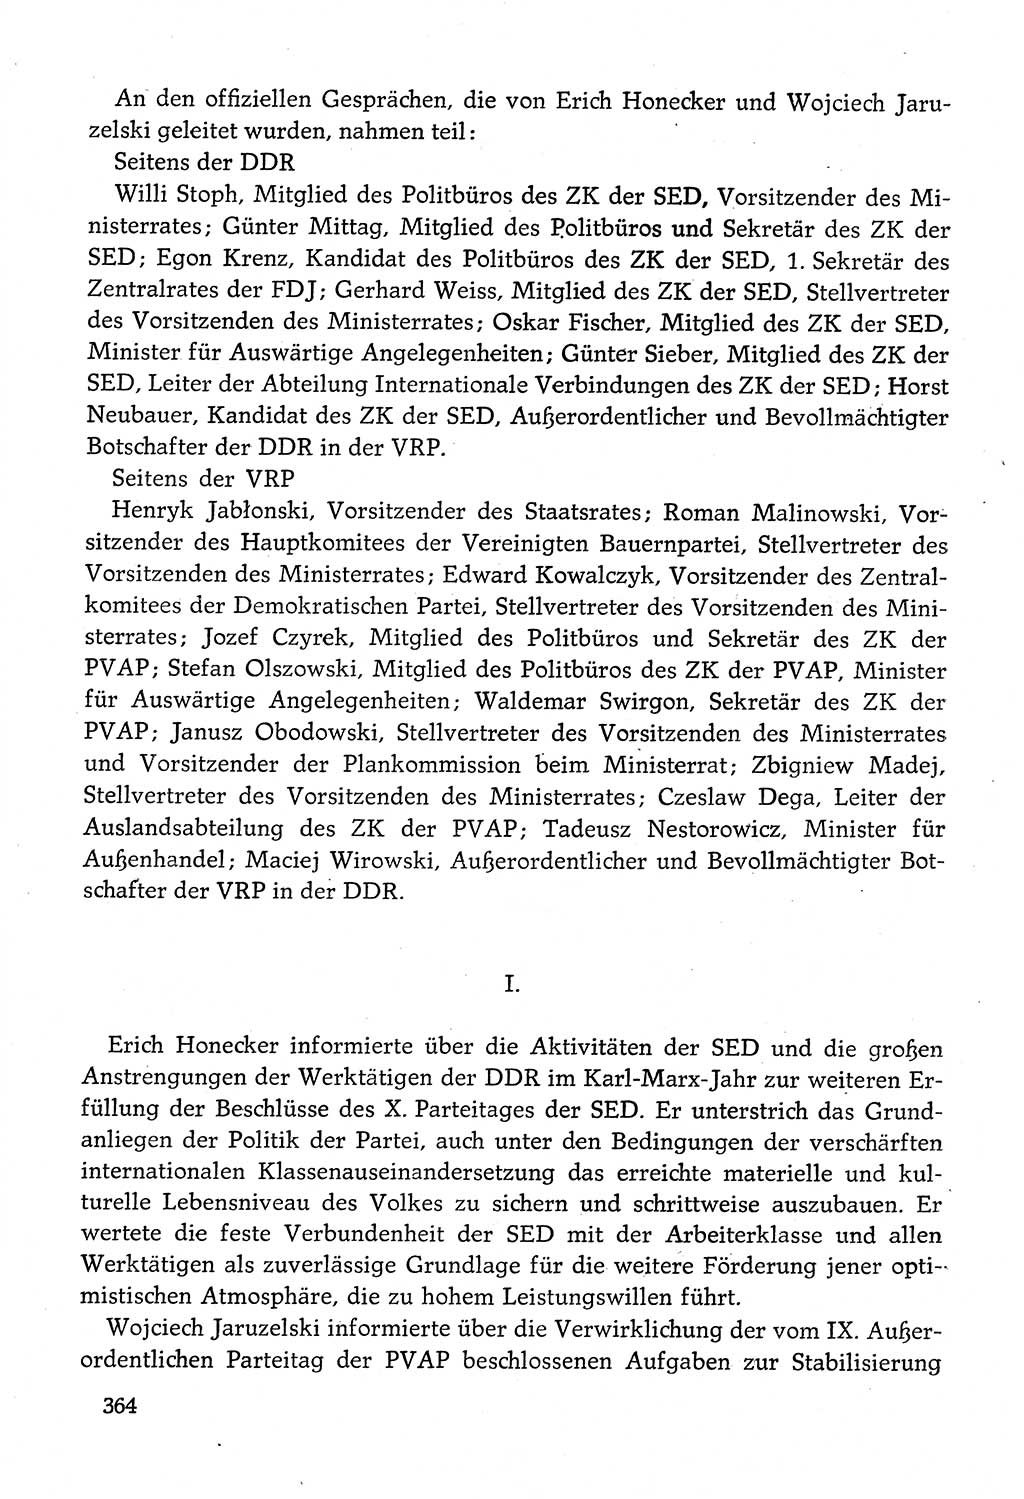 Dokumente der Sozialistischen Einheitspartei Deutschlands (SED) [Deutsche Demokratische Republik (DDR)] 1982-1983, Seite 364 (Dok. SED DDR 1982-1983, S. 364)